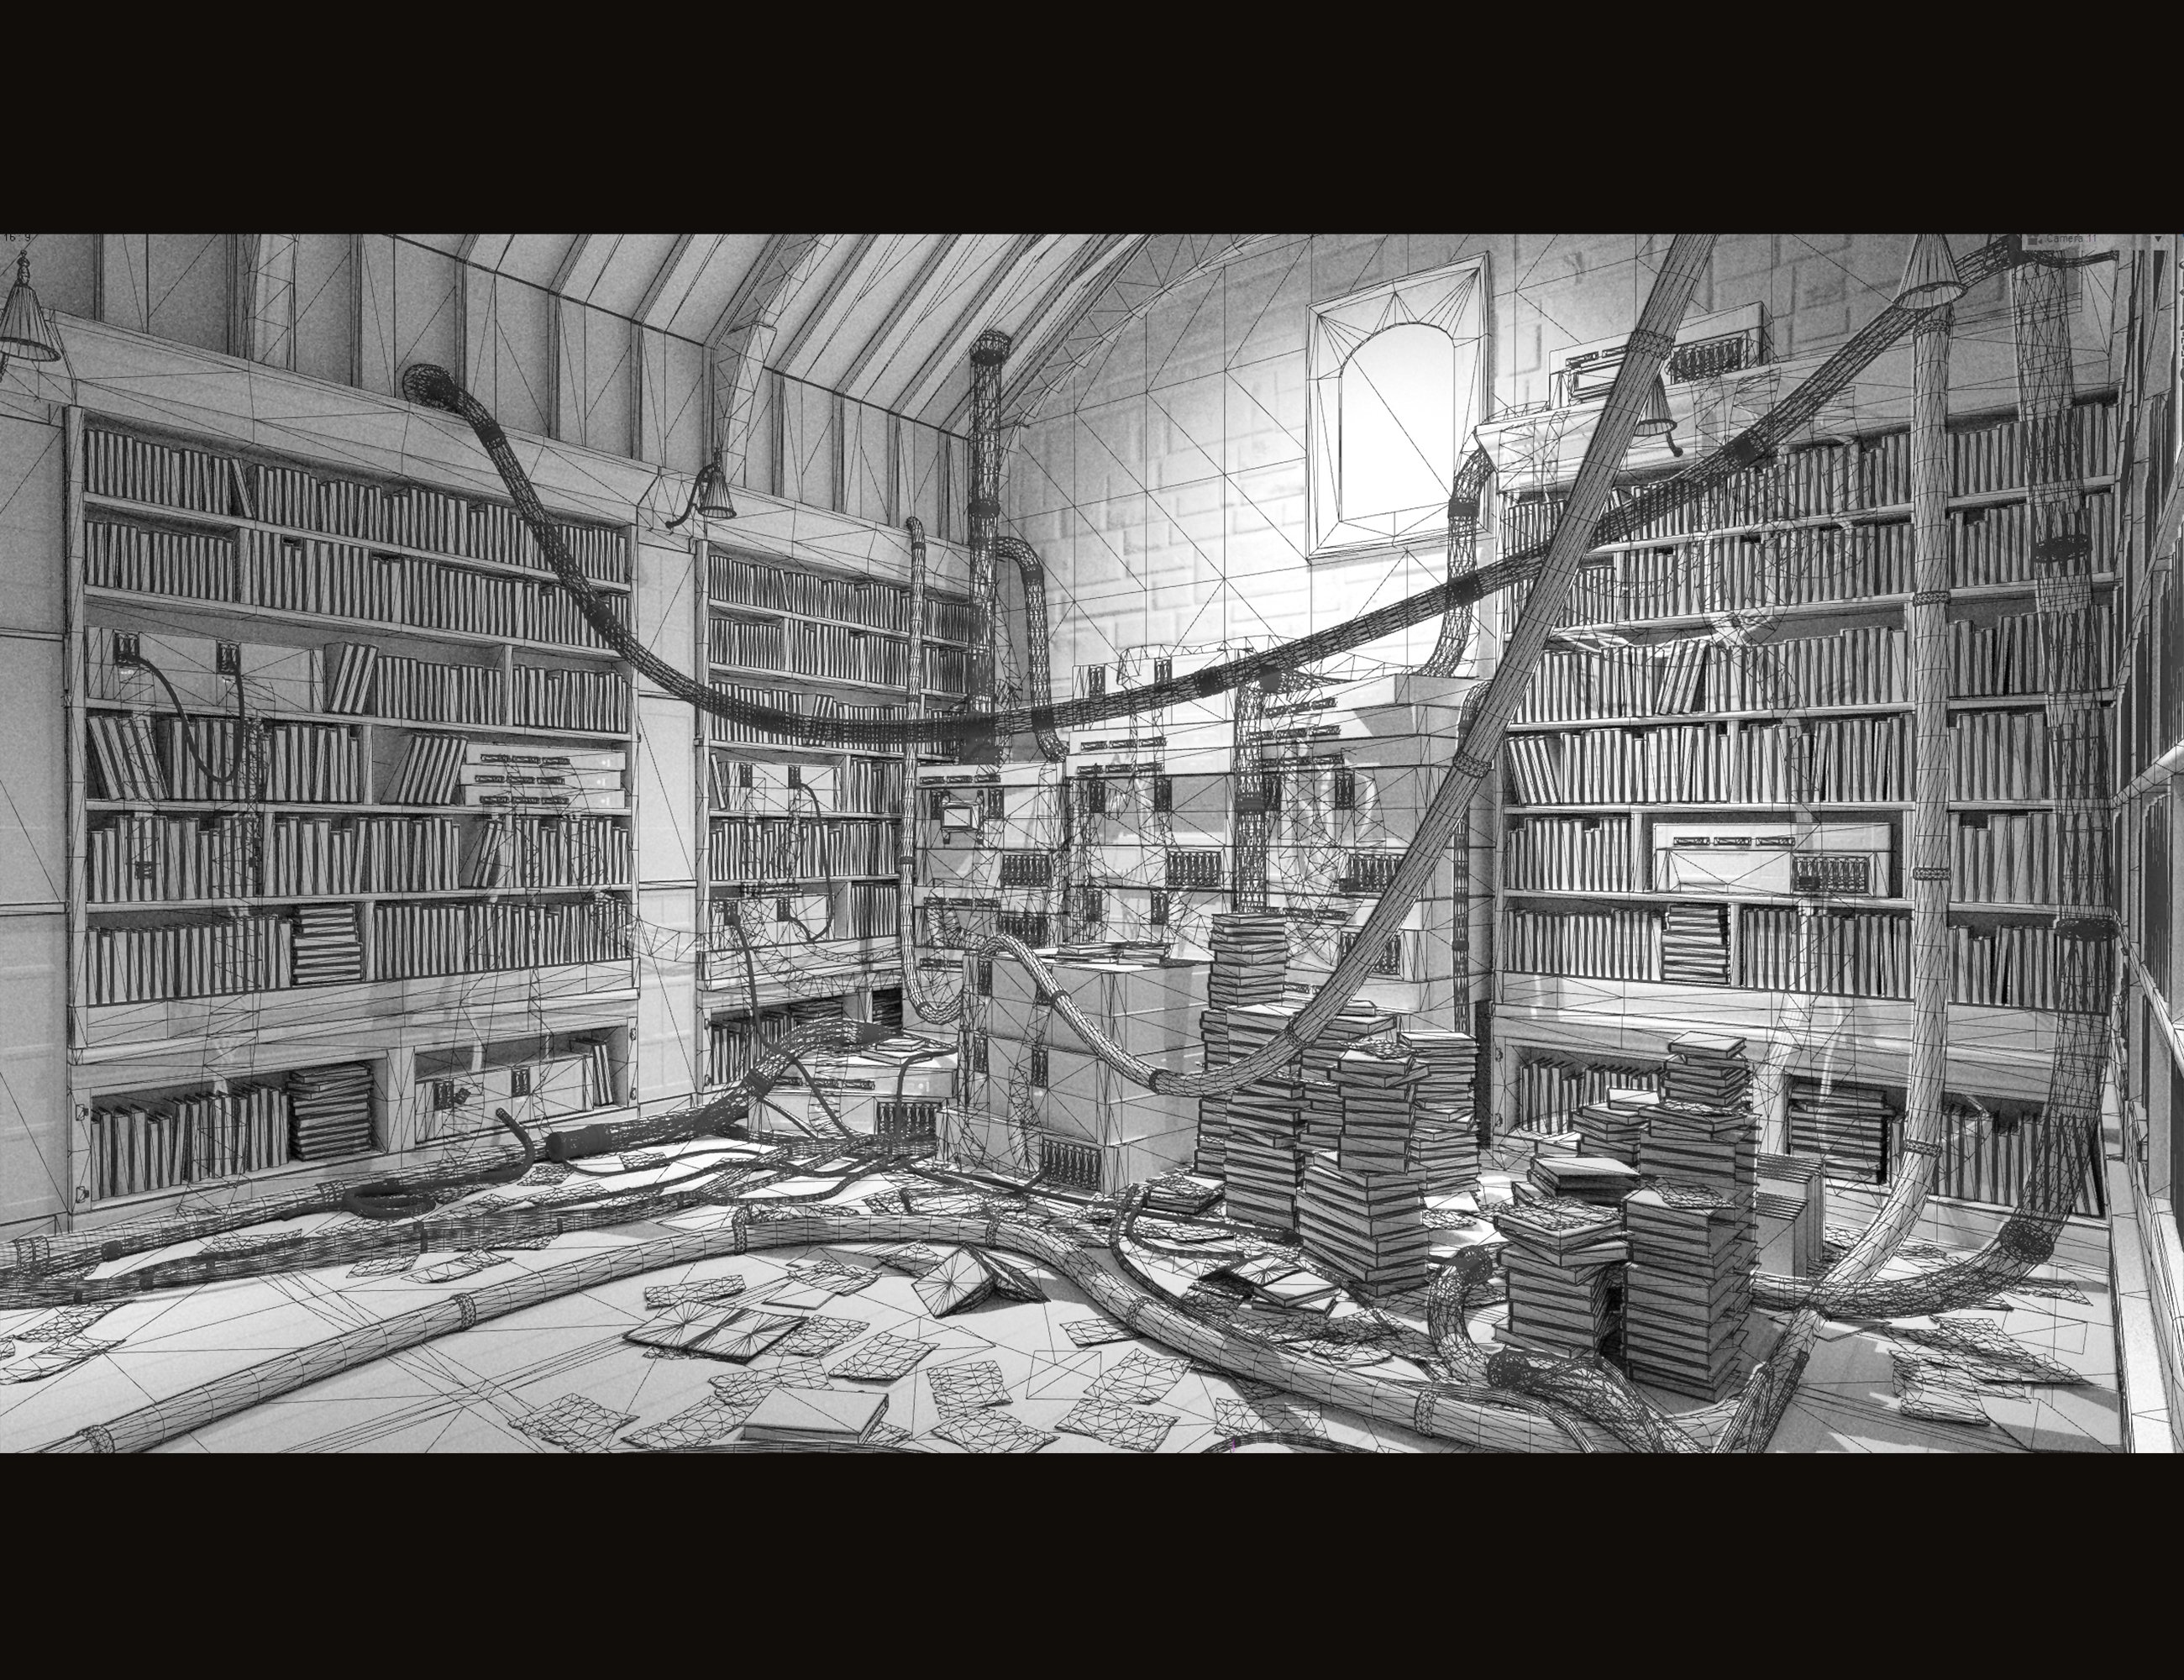 Old Library by: PolishDekogon Studios, 3D Models by Daz 3D